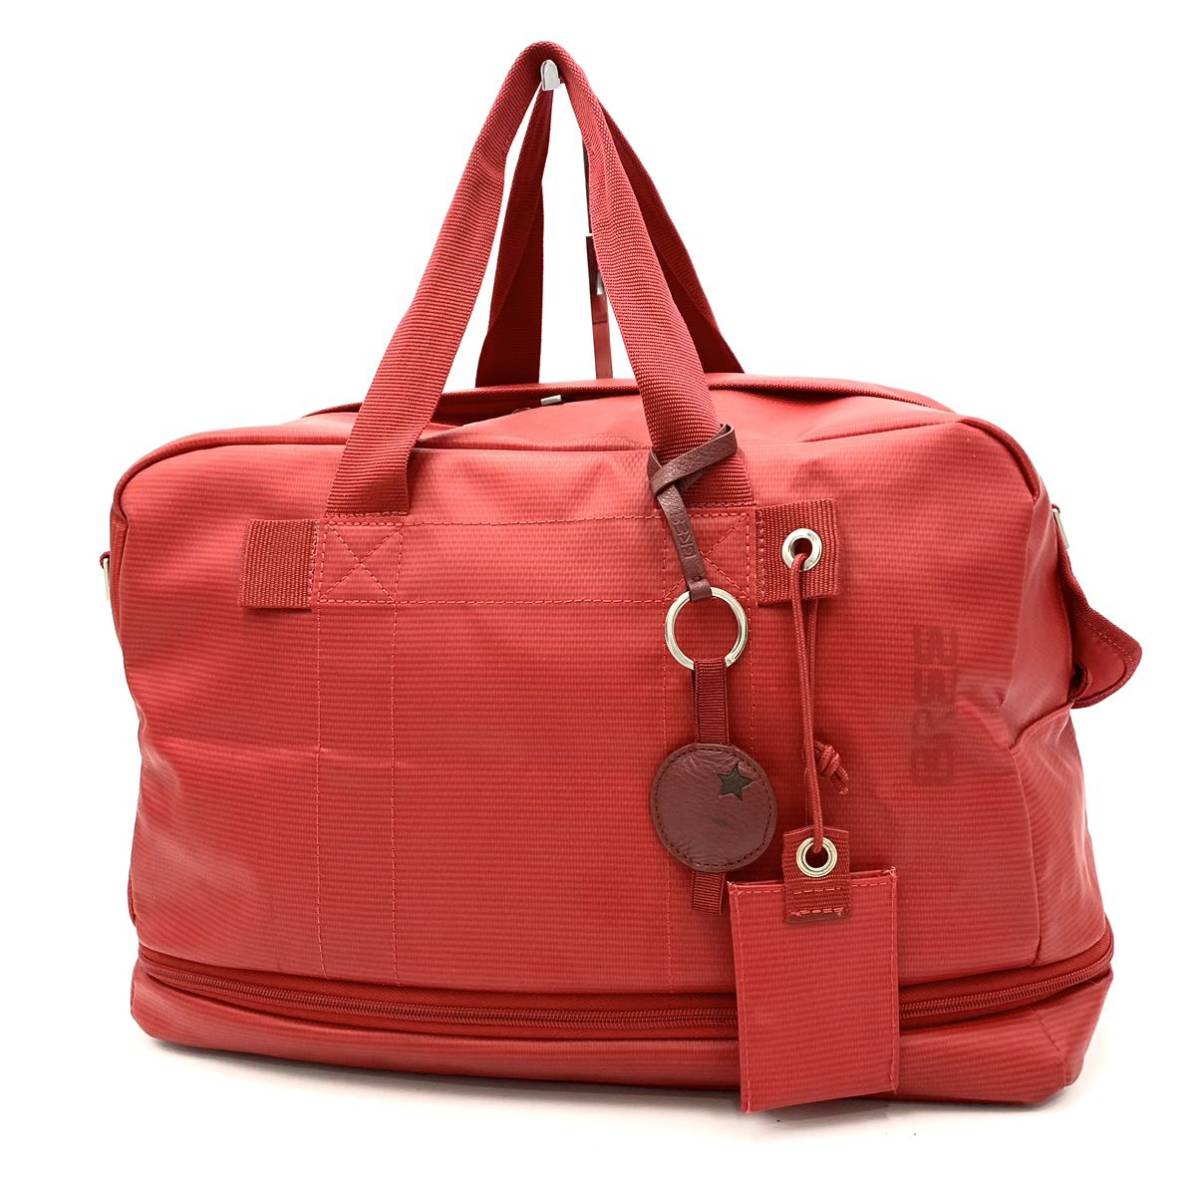 ☆ 至高の一品 '容量調整可能' BREE ブリー 大容量 ボストンバッグ 手提げ トートバッグ 旅行カバン RED 赤 メンズ トラベルバッグ 紳士鞄